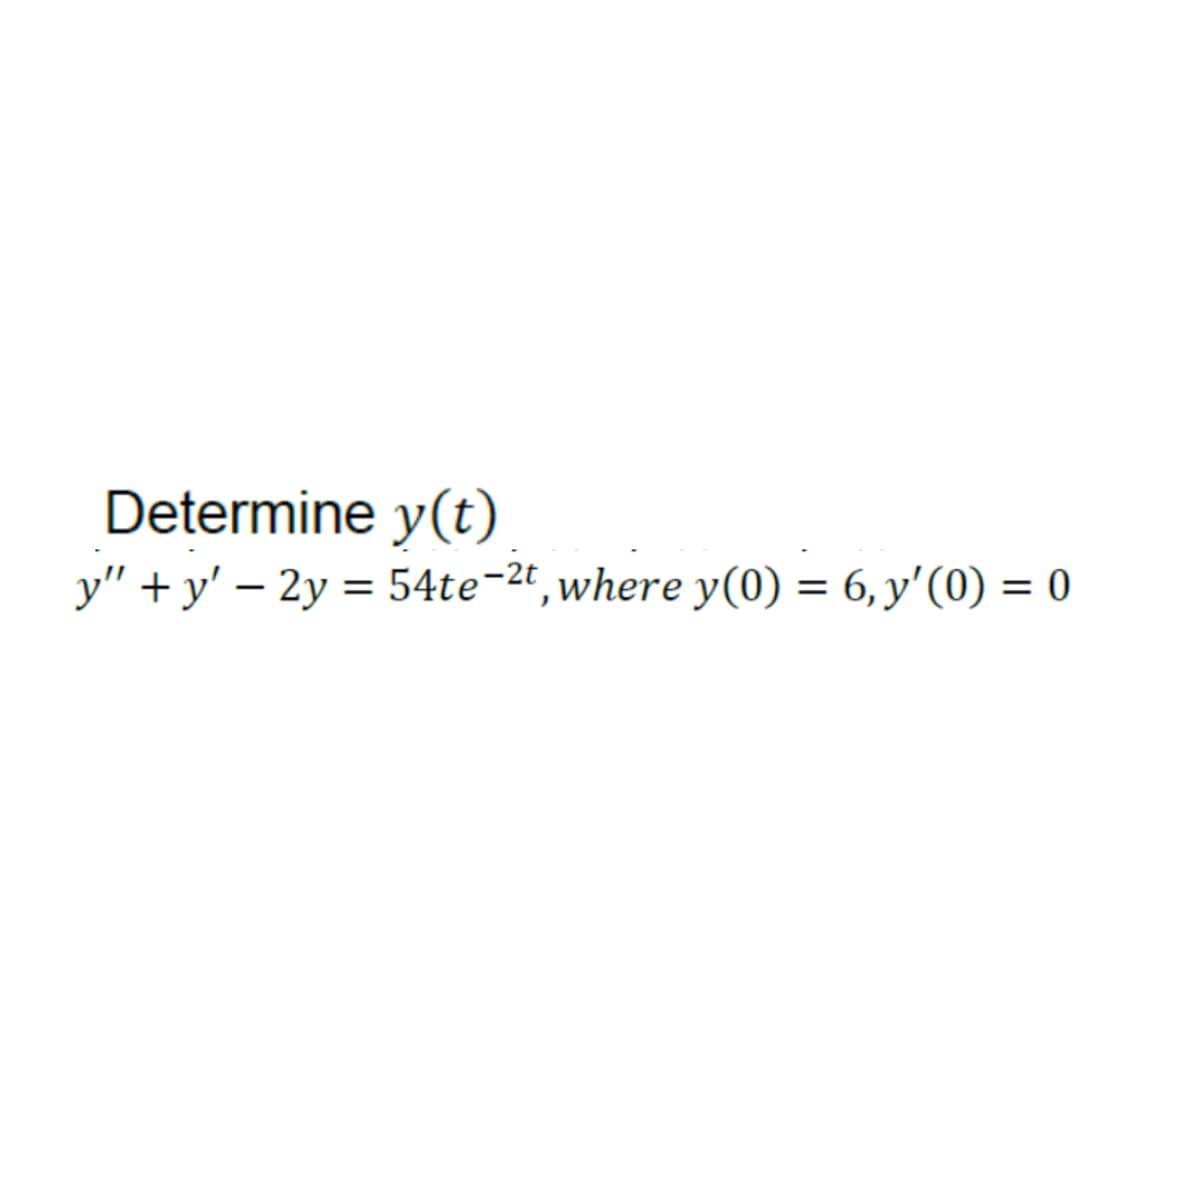 Determine y(t)
y"+y' - 2y = 54te-2t, where y(0) = 6, y'(0) = 0